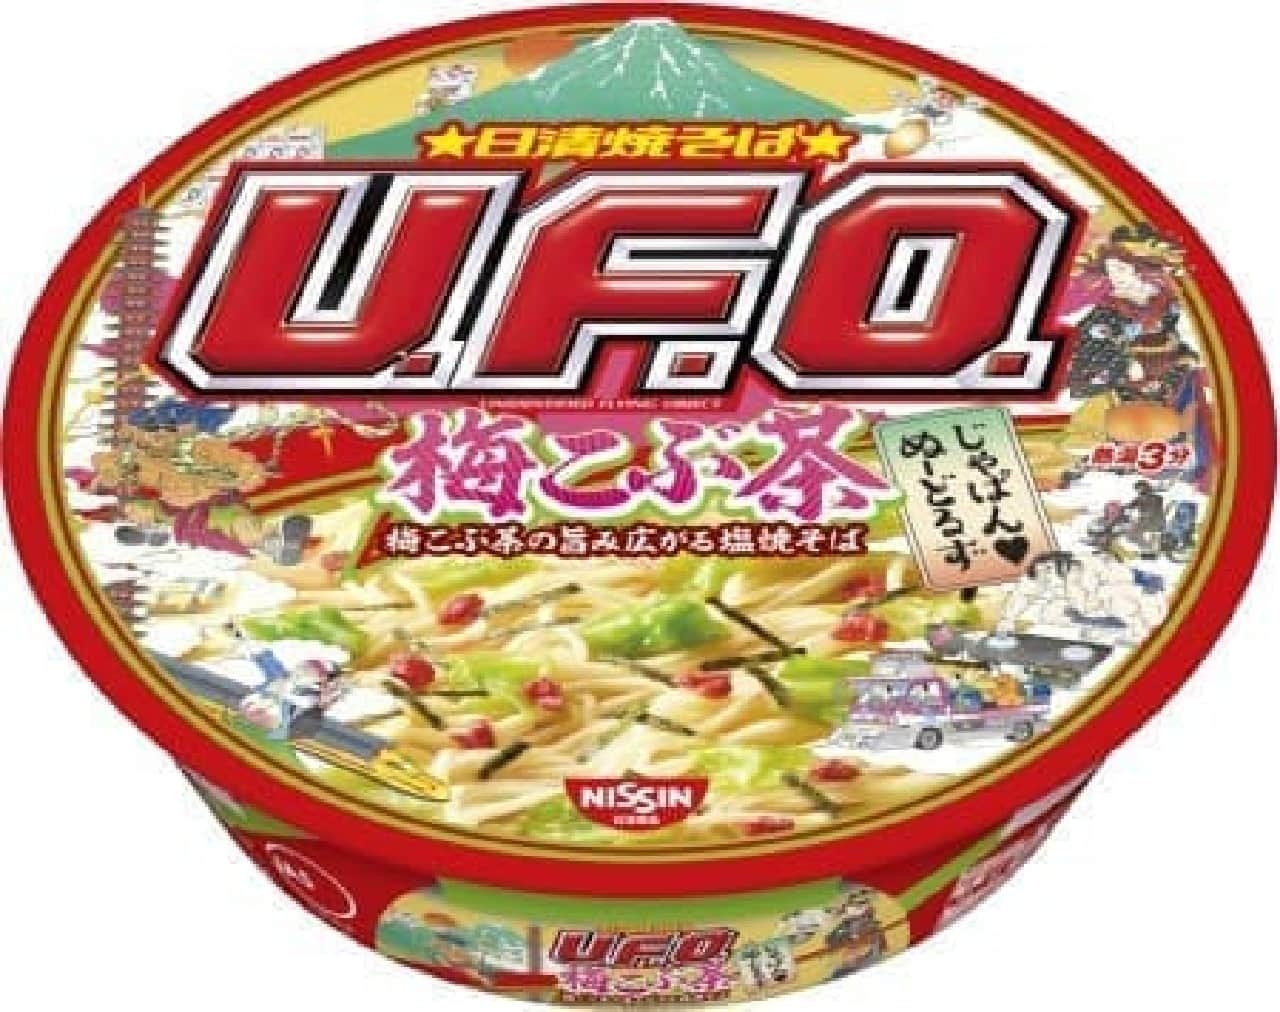 Nissin Foods "Nissin Yakisoba UFO Umekobucha Shioyakisoba that spreads the flavor of Umekobucha"